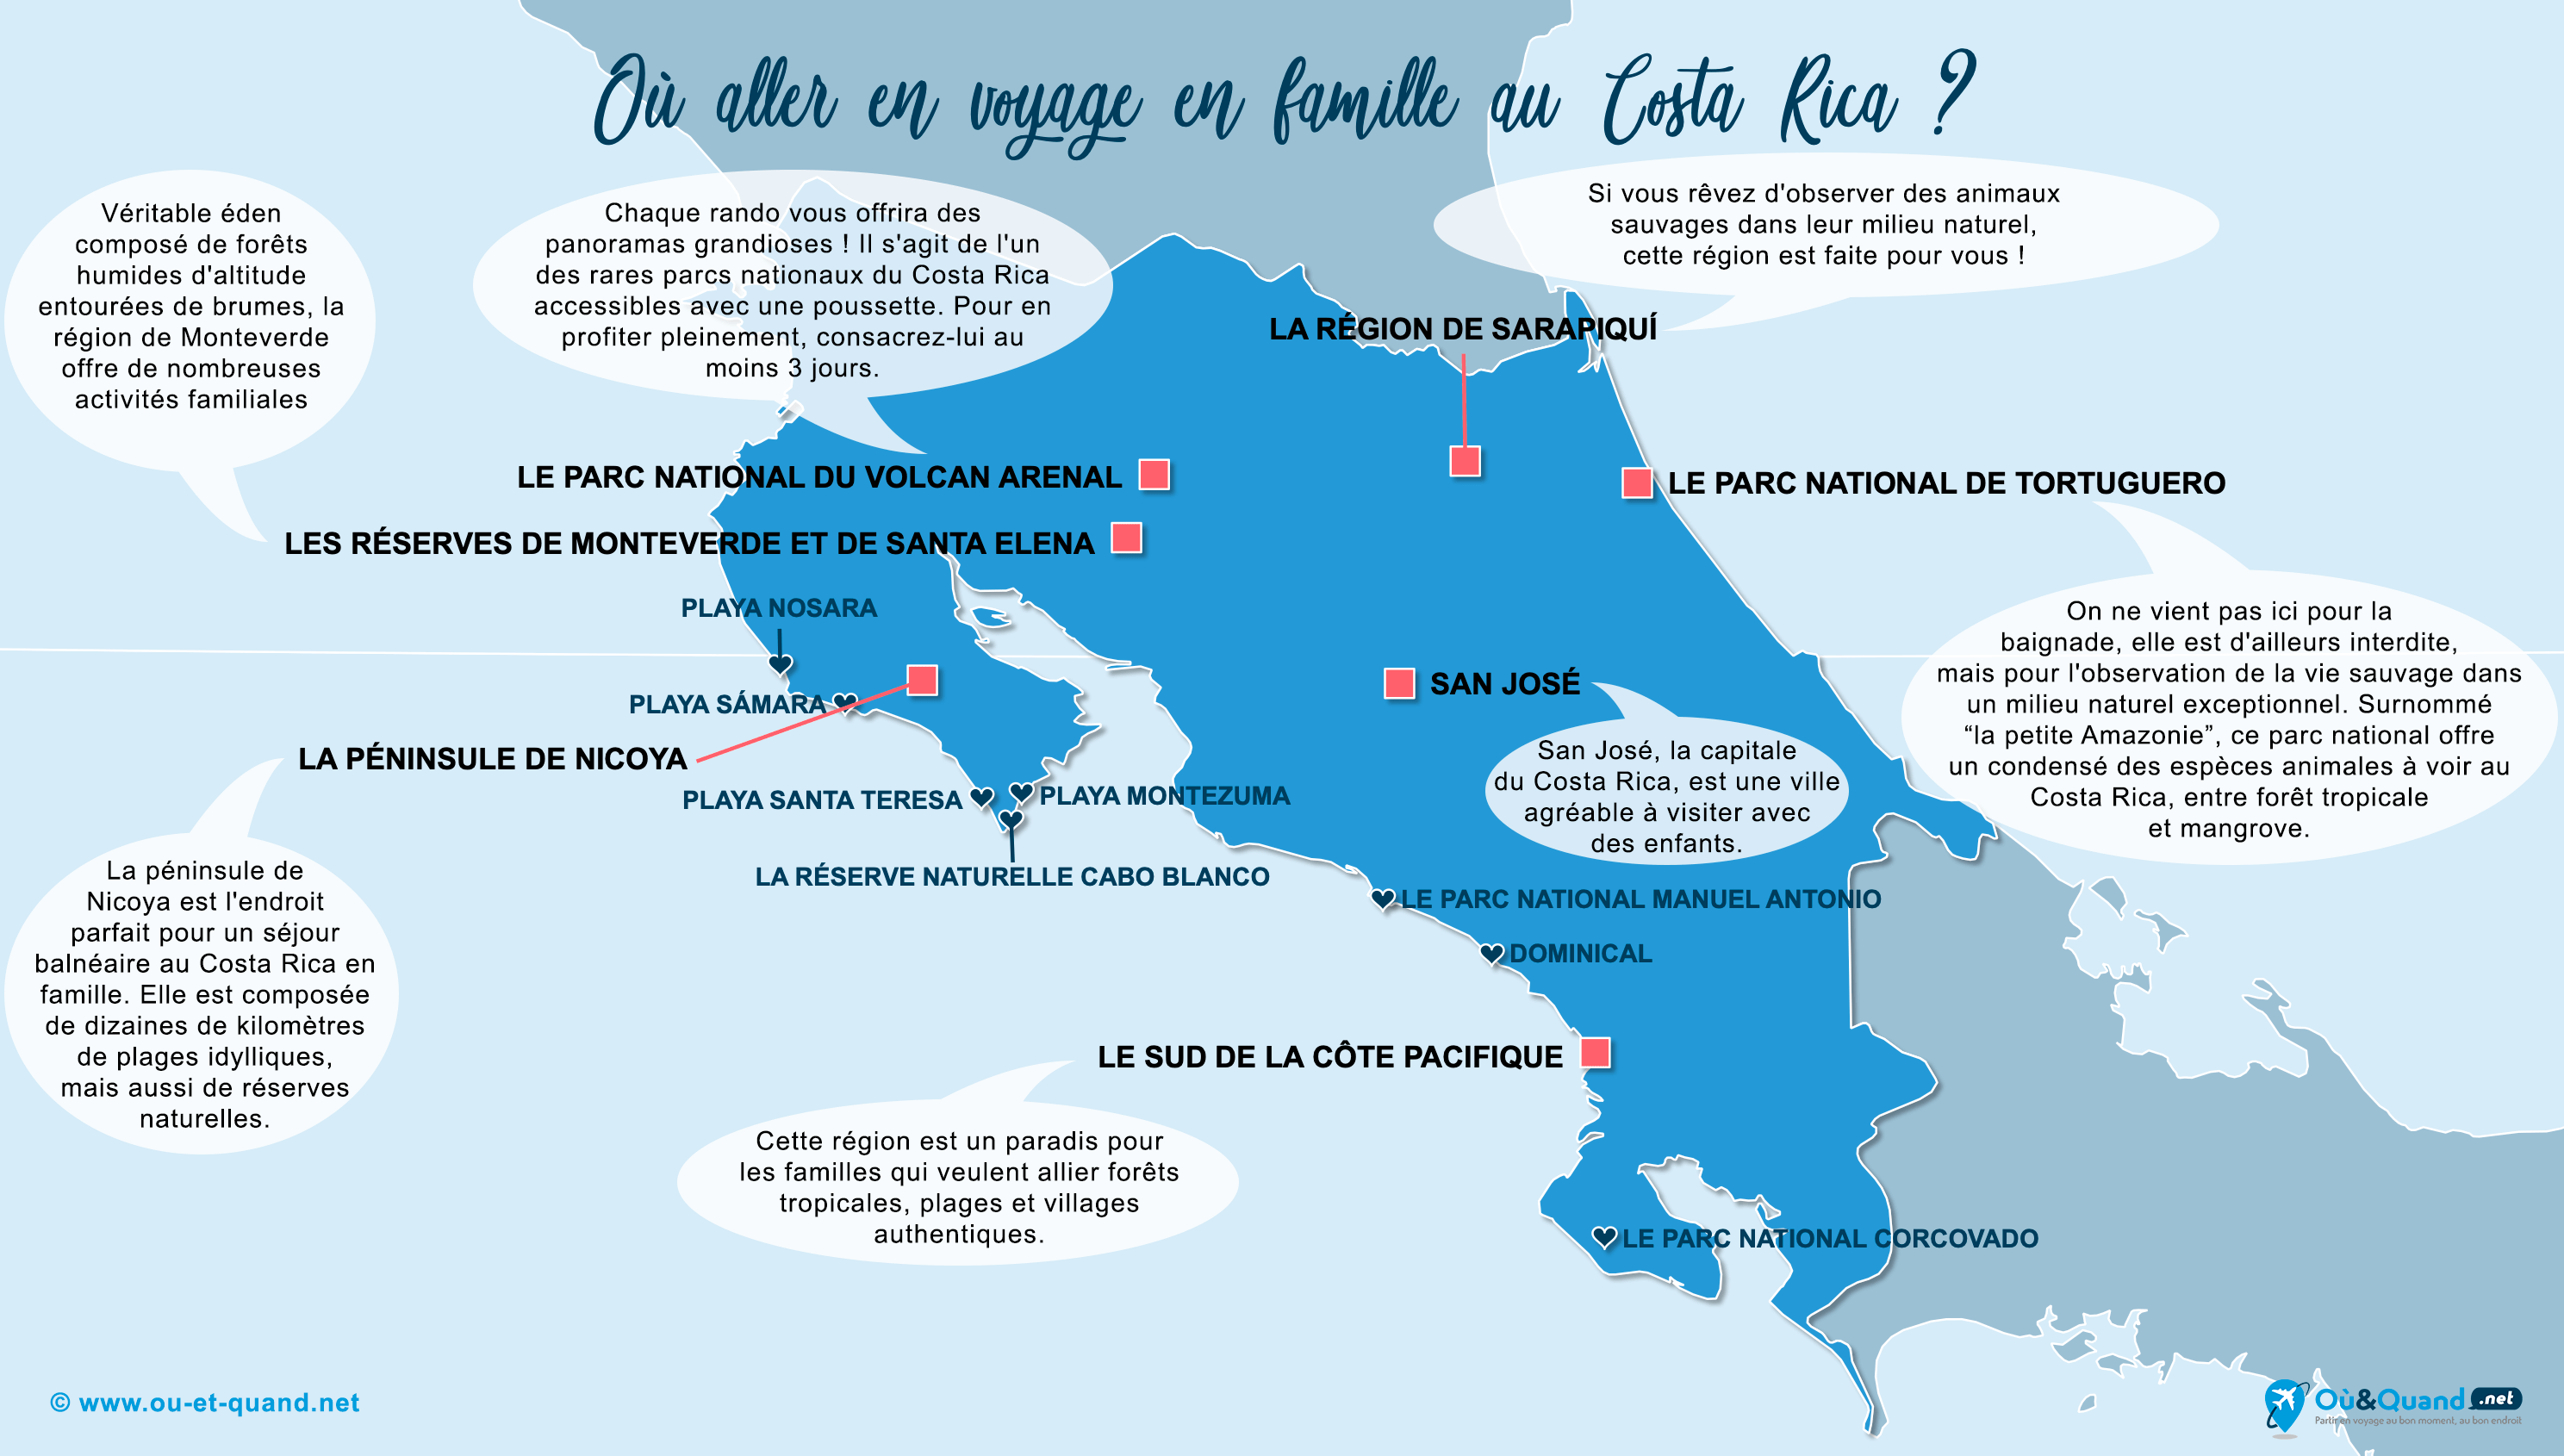 La carte des endroits au Costa Rica où aller en vacances en famille